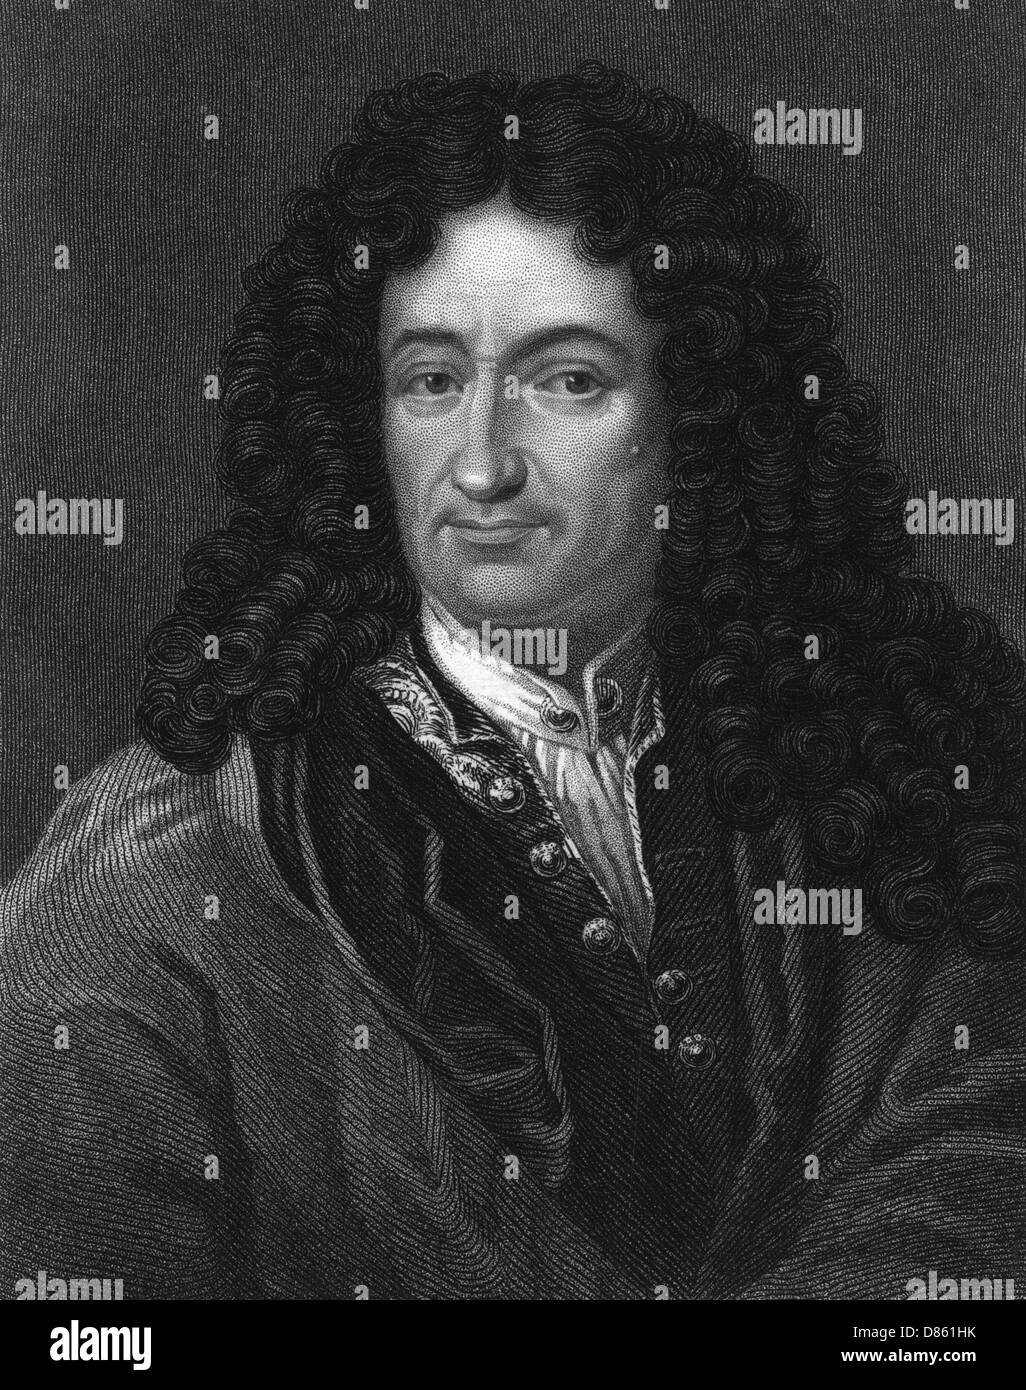 Gottfried von Leibniz, German mathematician and philosopher Stock Photo